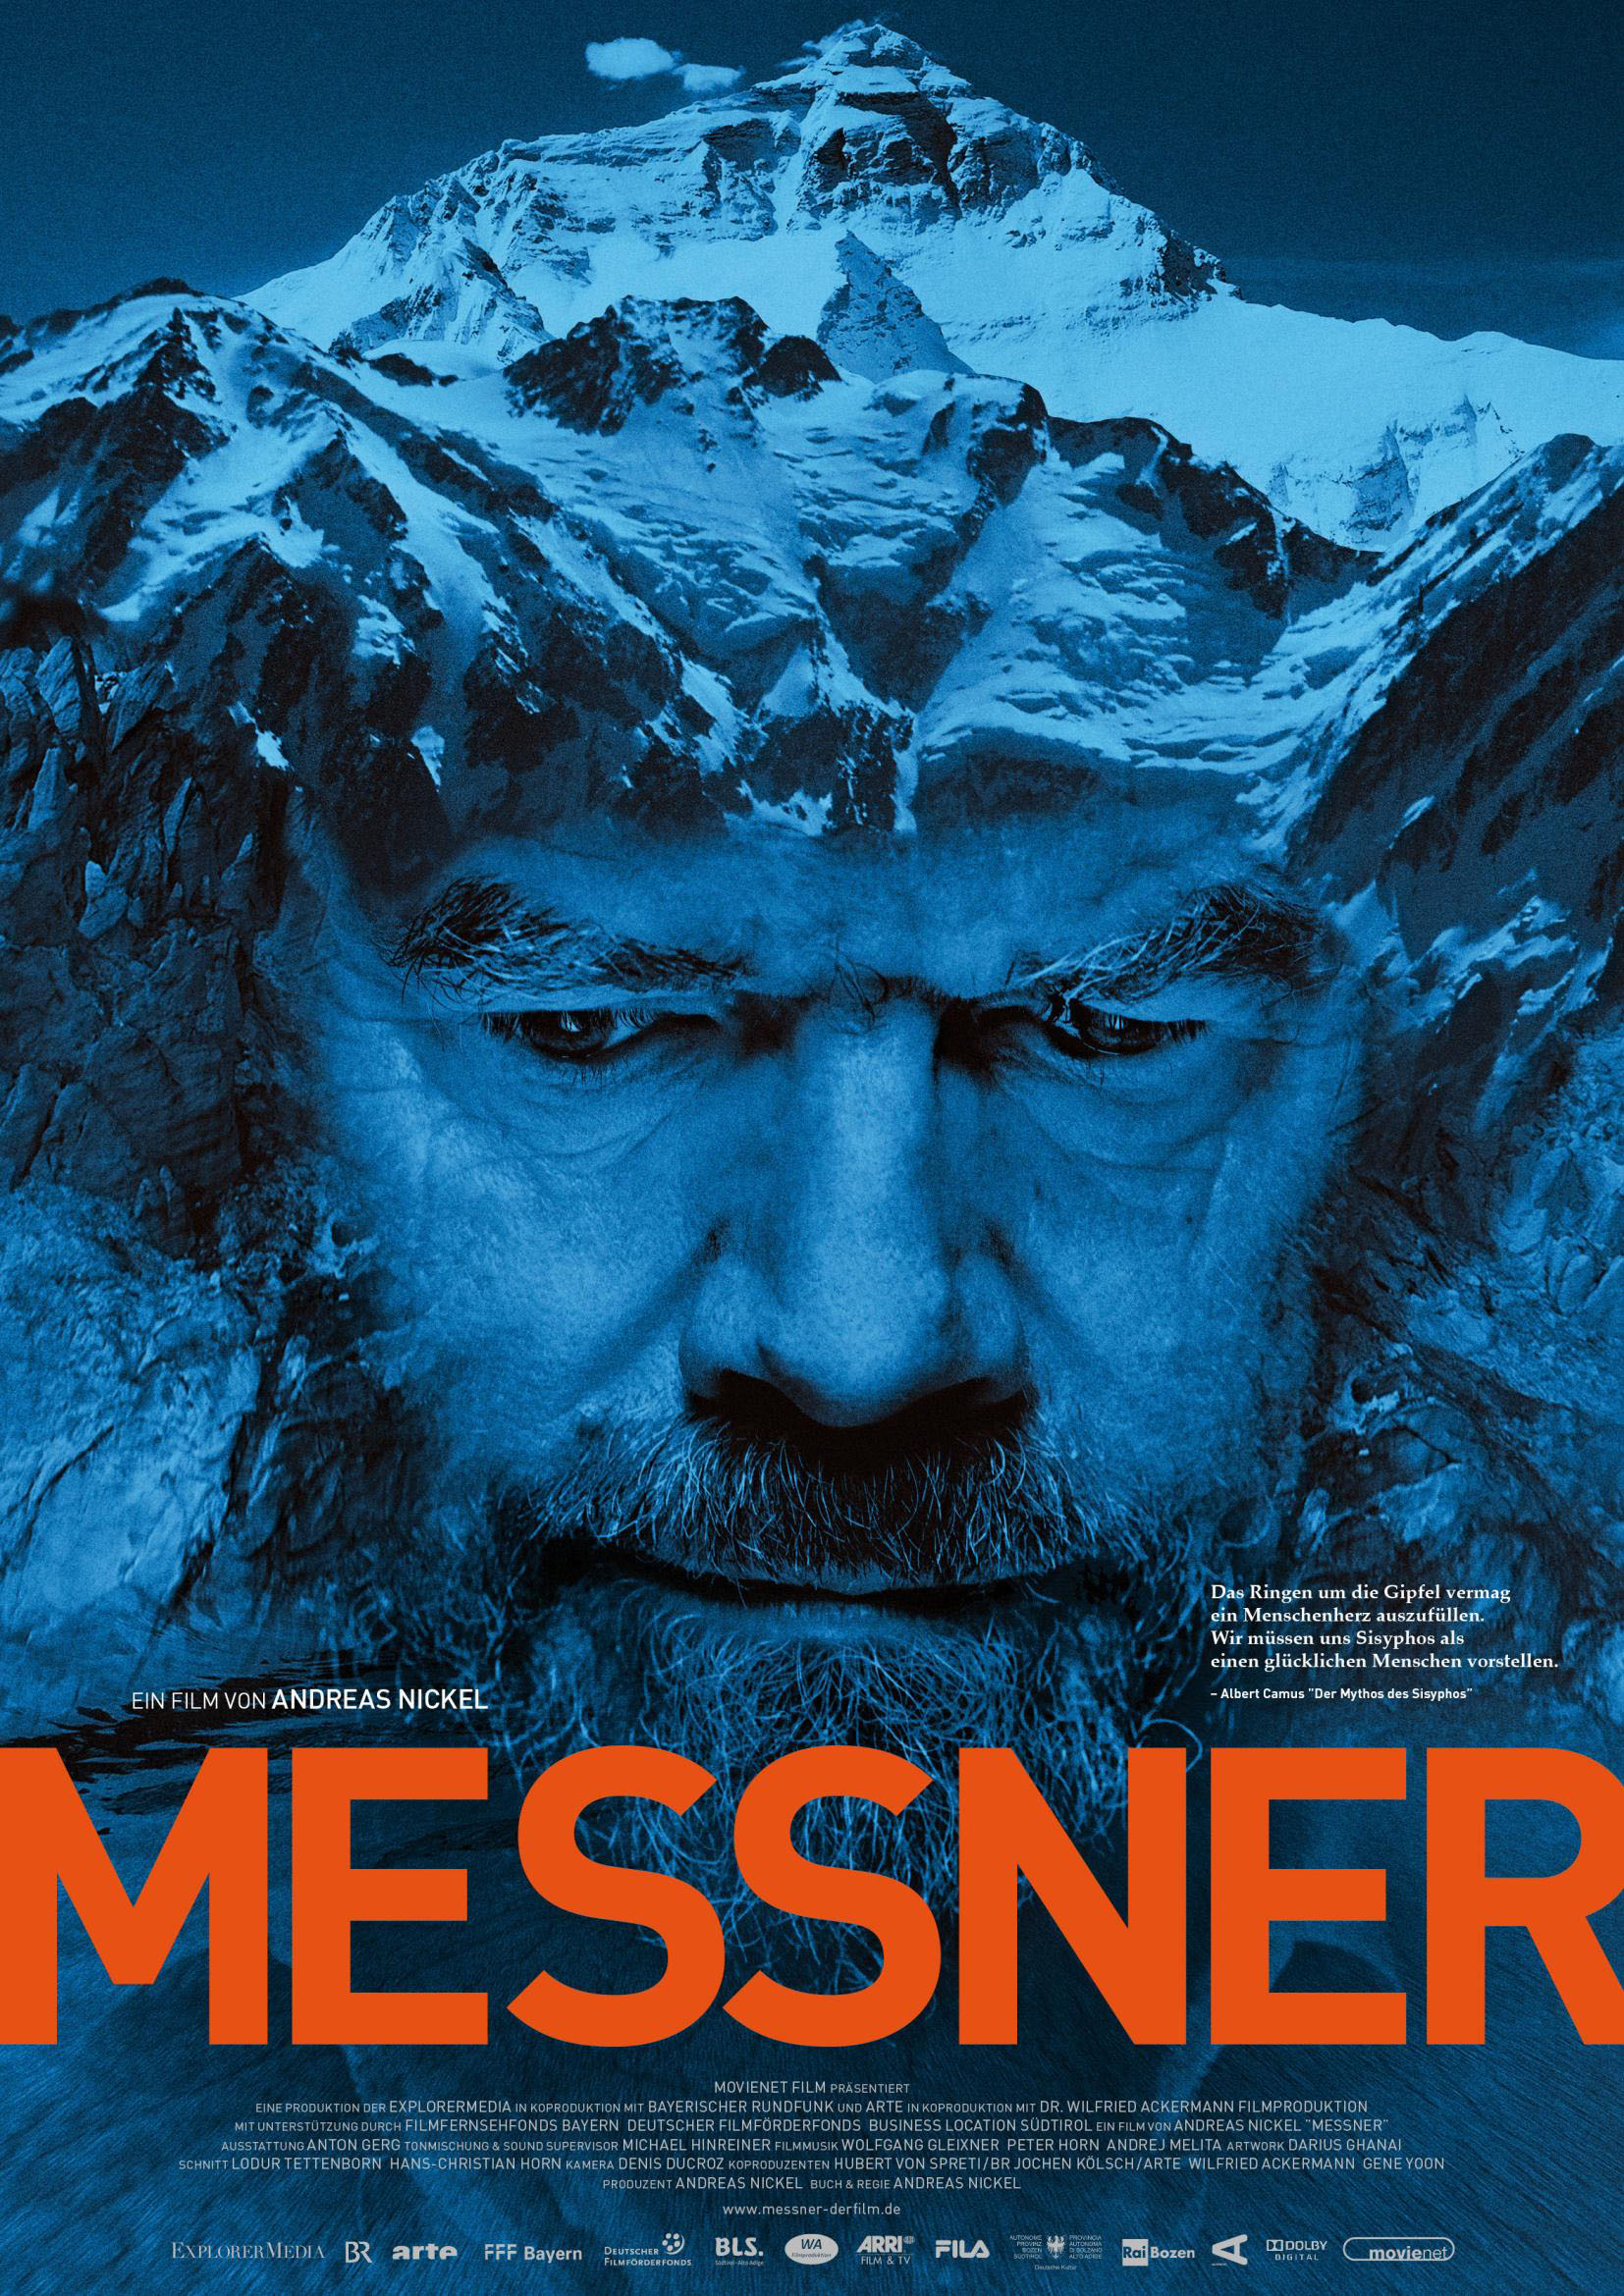 Райнхольд Месснер (Reinhold Messner) - постер к документальному фильму, автобиографии